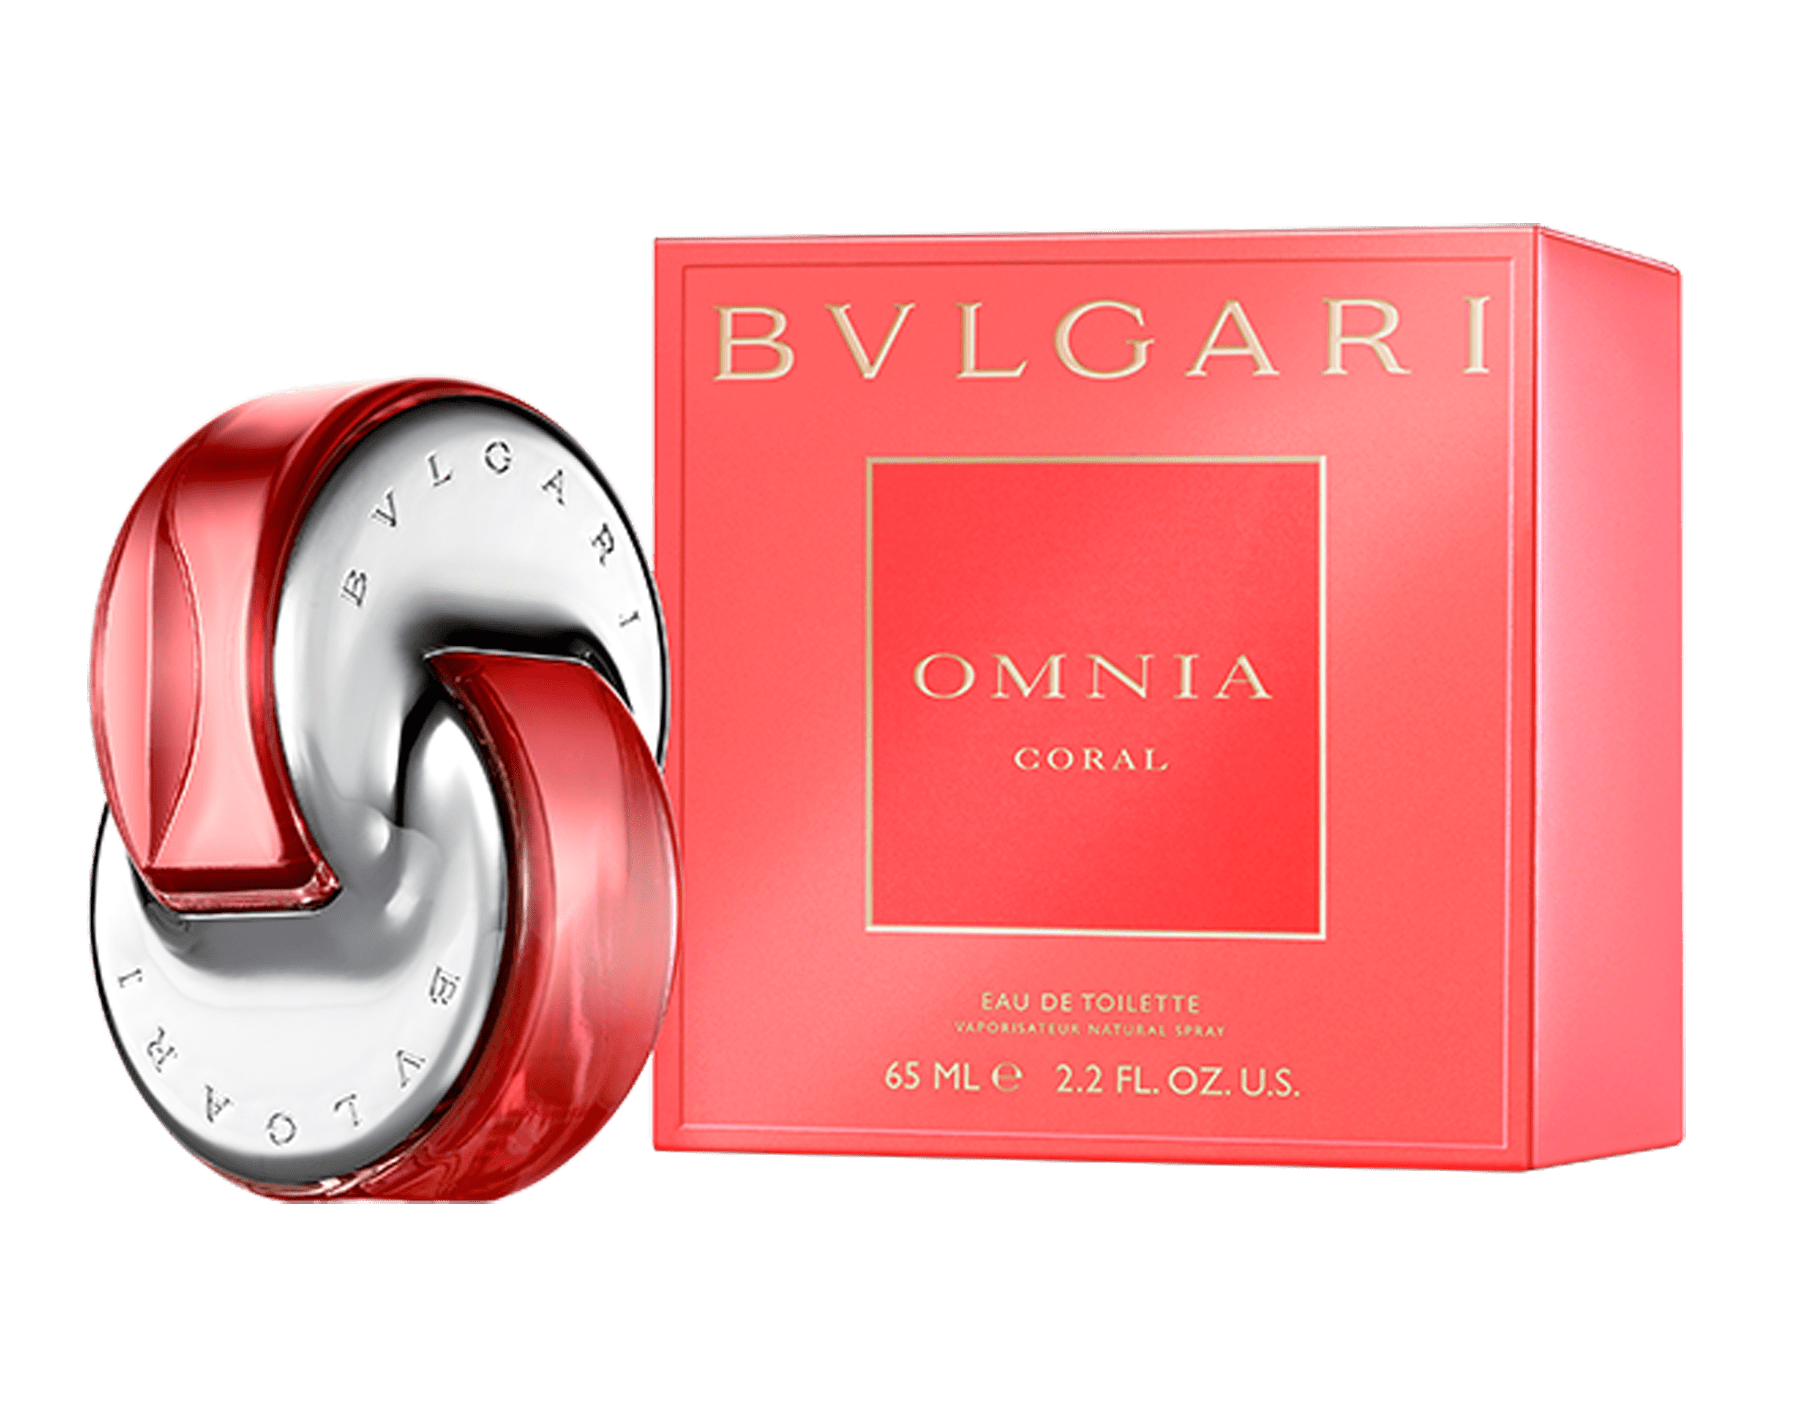 bvlgari omnia scent description